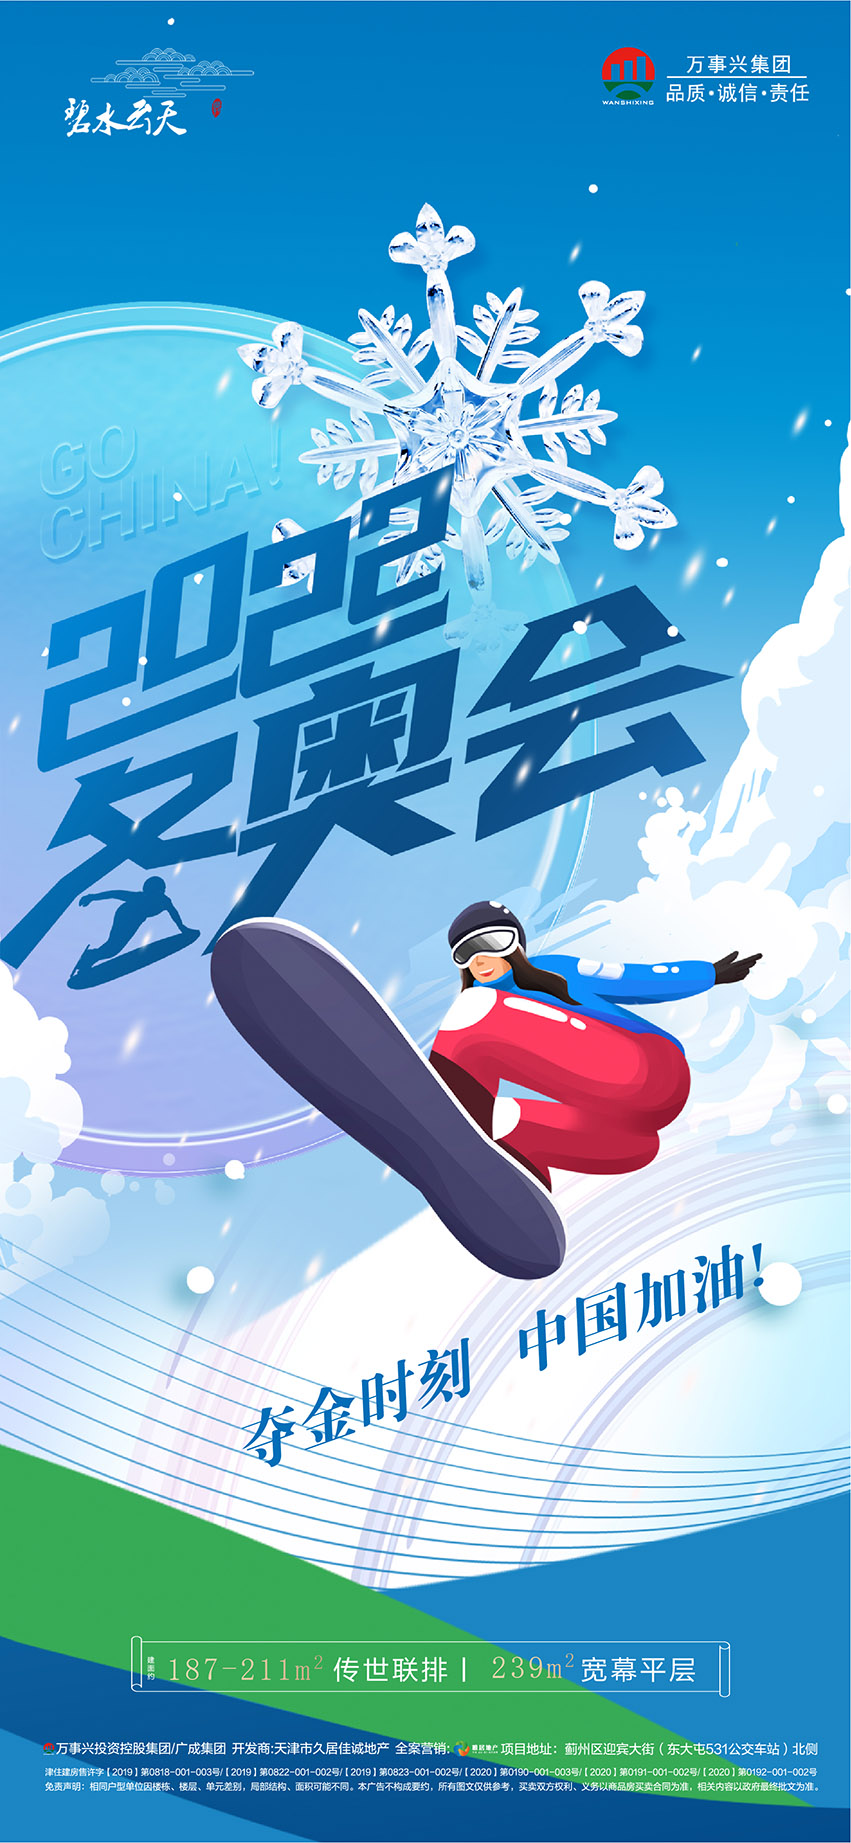 北京冬奥会助威加油系列海报-08.jpg